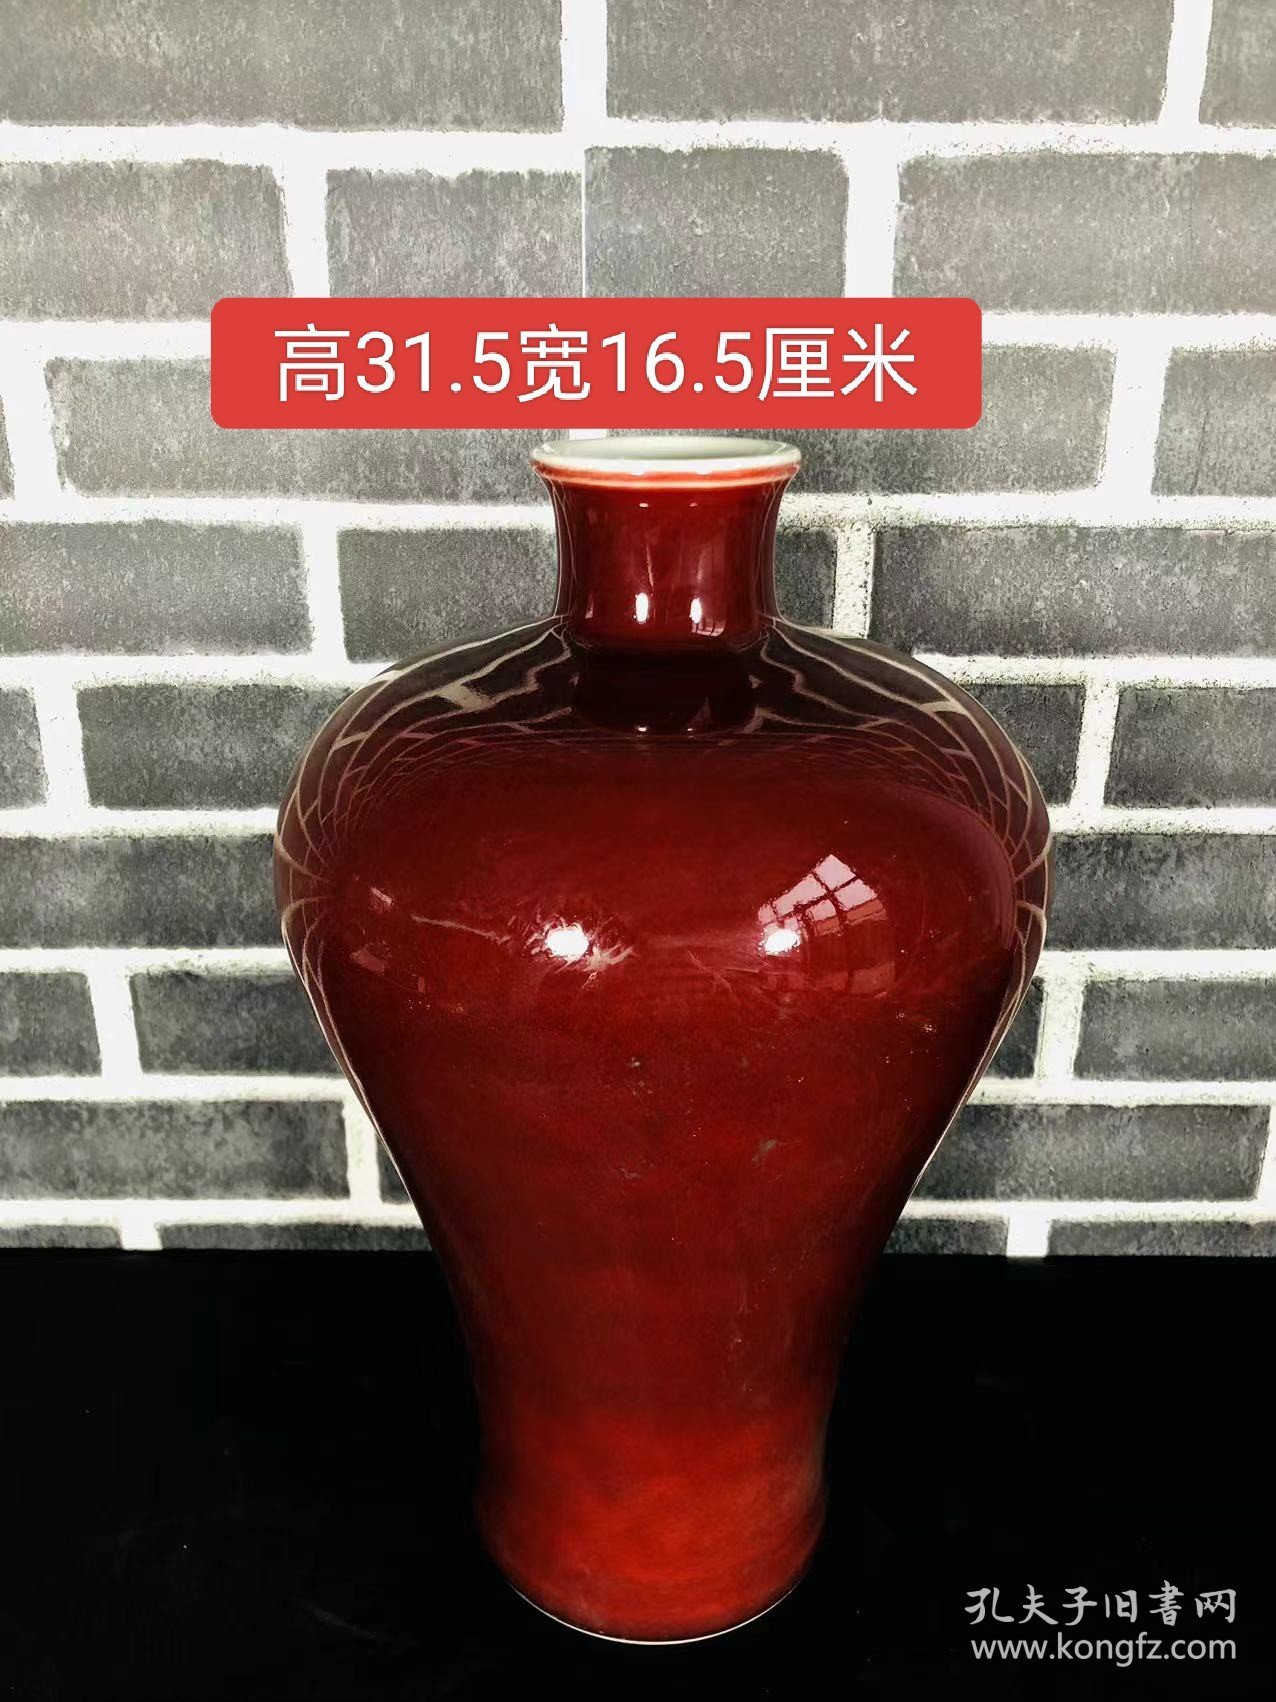 流出红釉收藏梅瓶